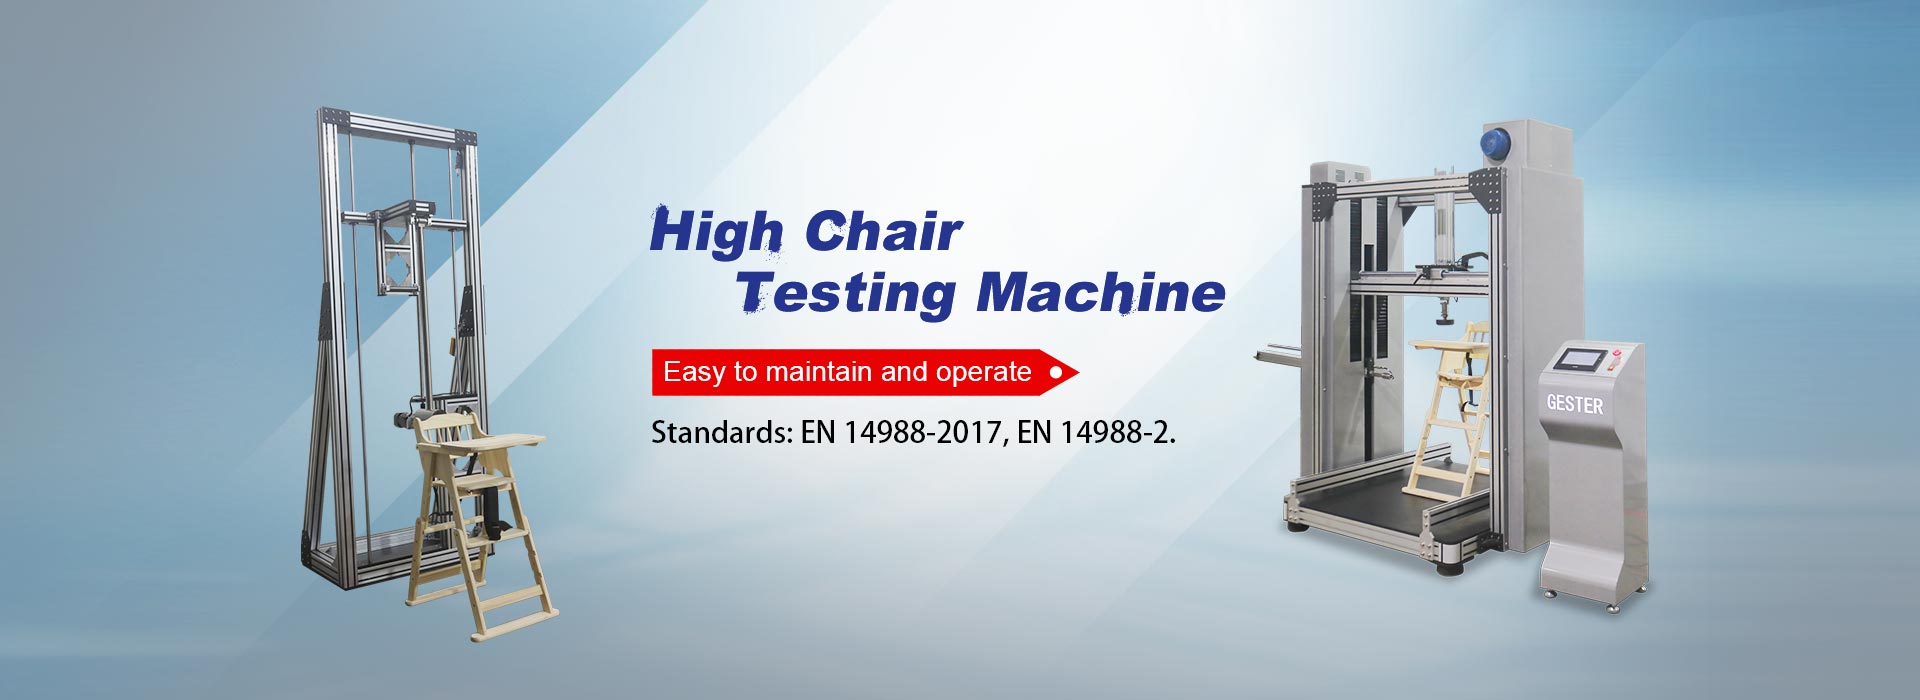 High Chair Testing Machine